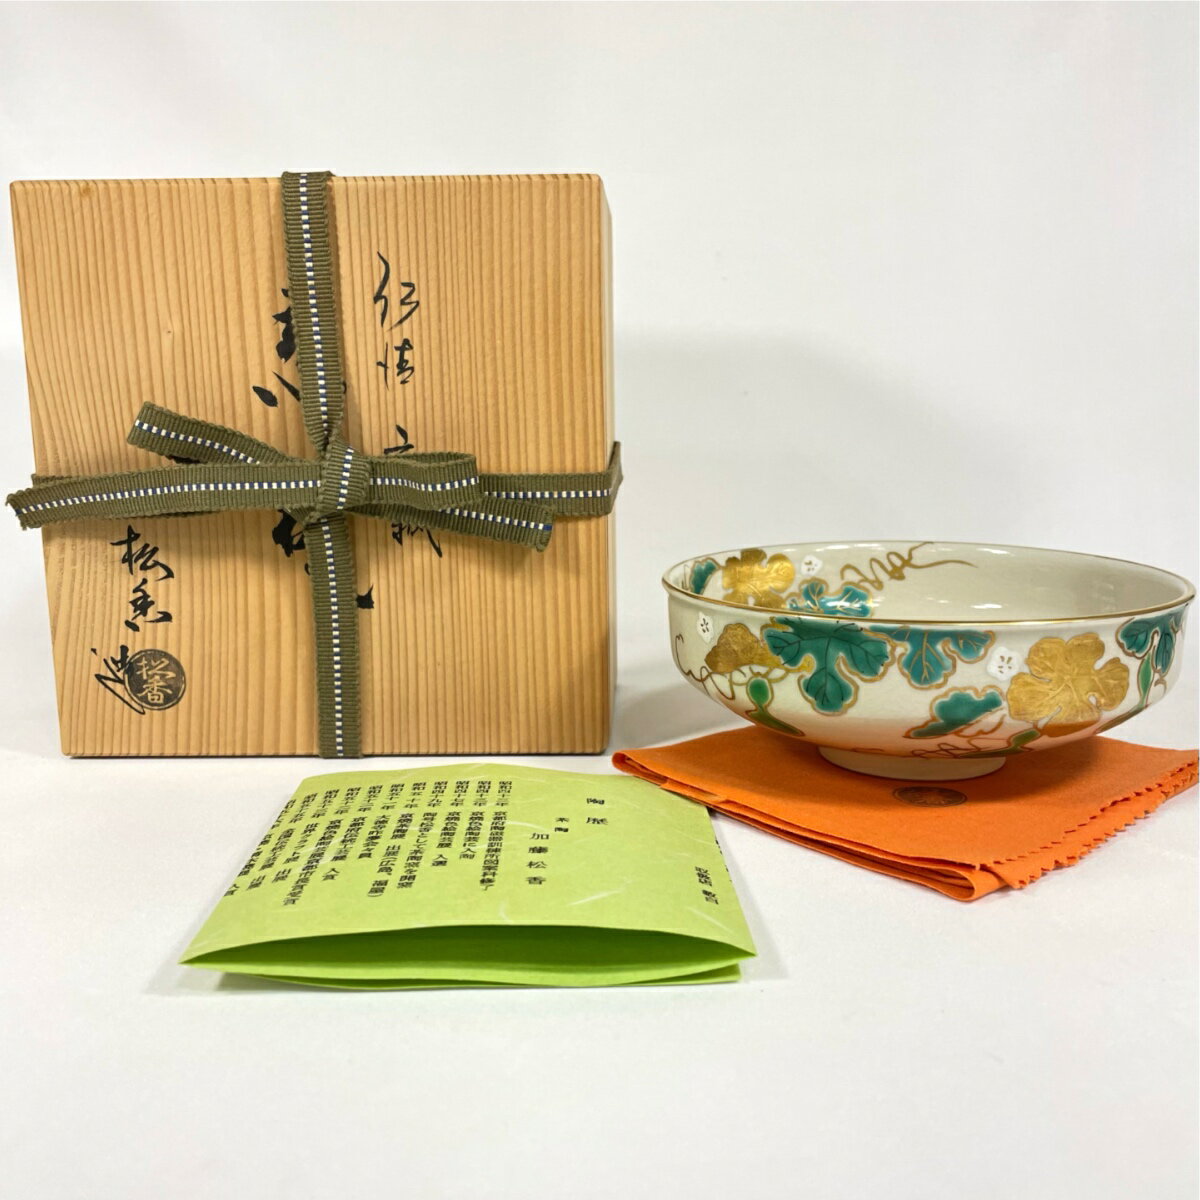 京焼/清水焼 陶器 抹茶茶碗 黒楽瑞祥 紙箱入 Kyo-yaki. Japanese Matcha chawan teabowl Kuro raku zuisho. Paper box. Ceramic.